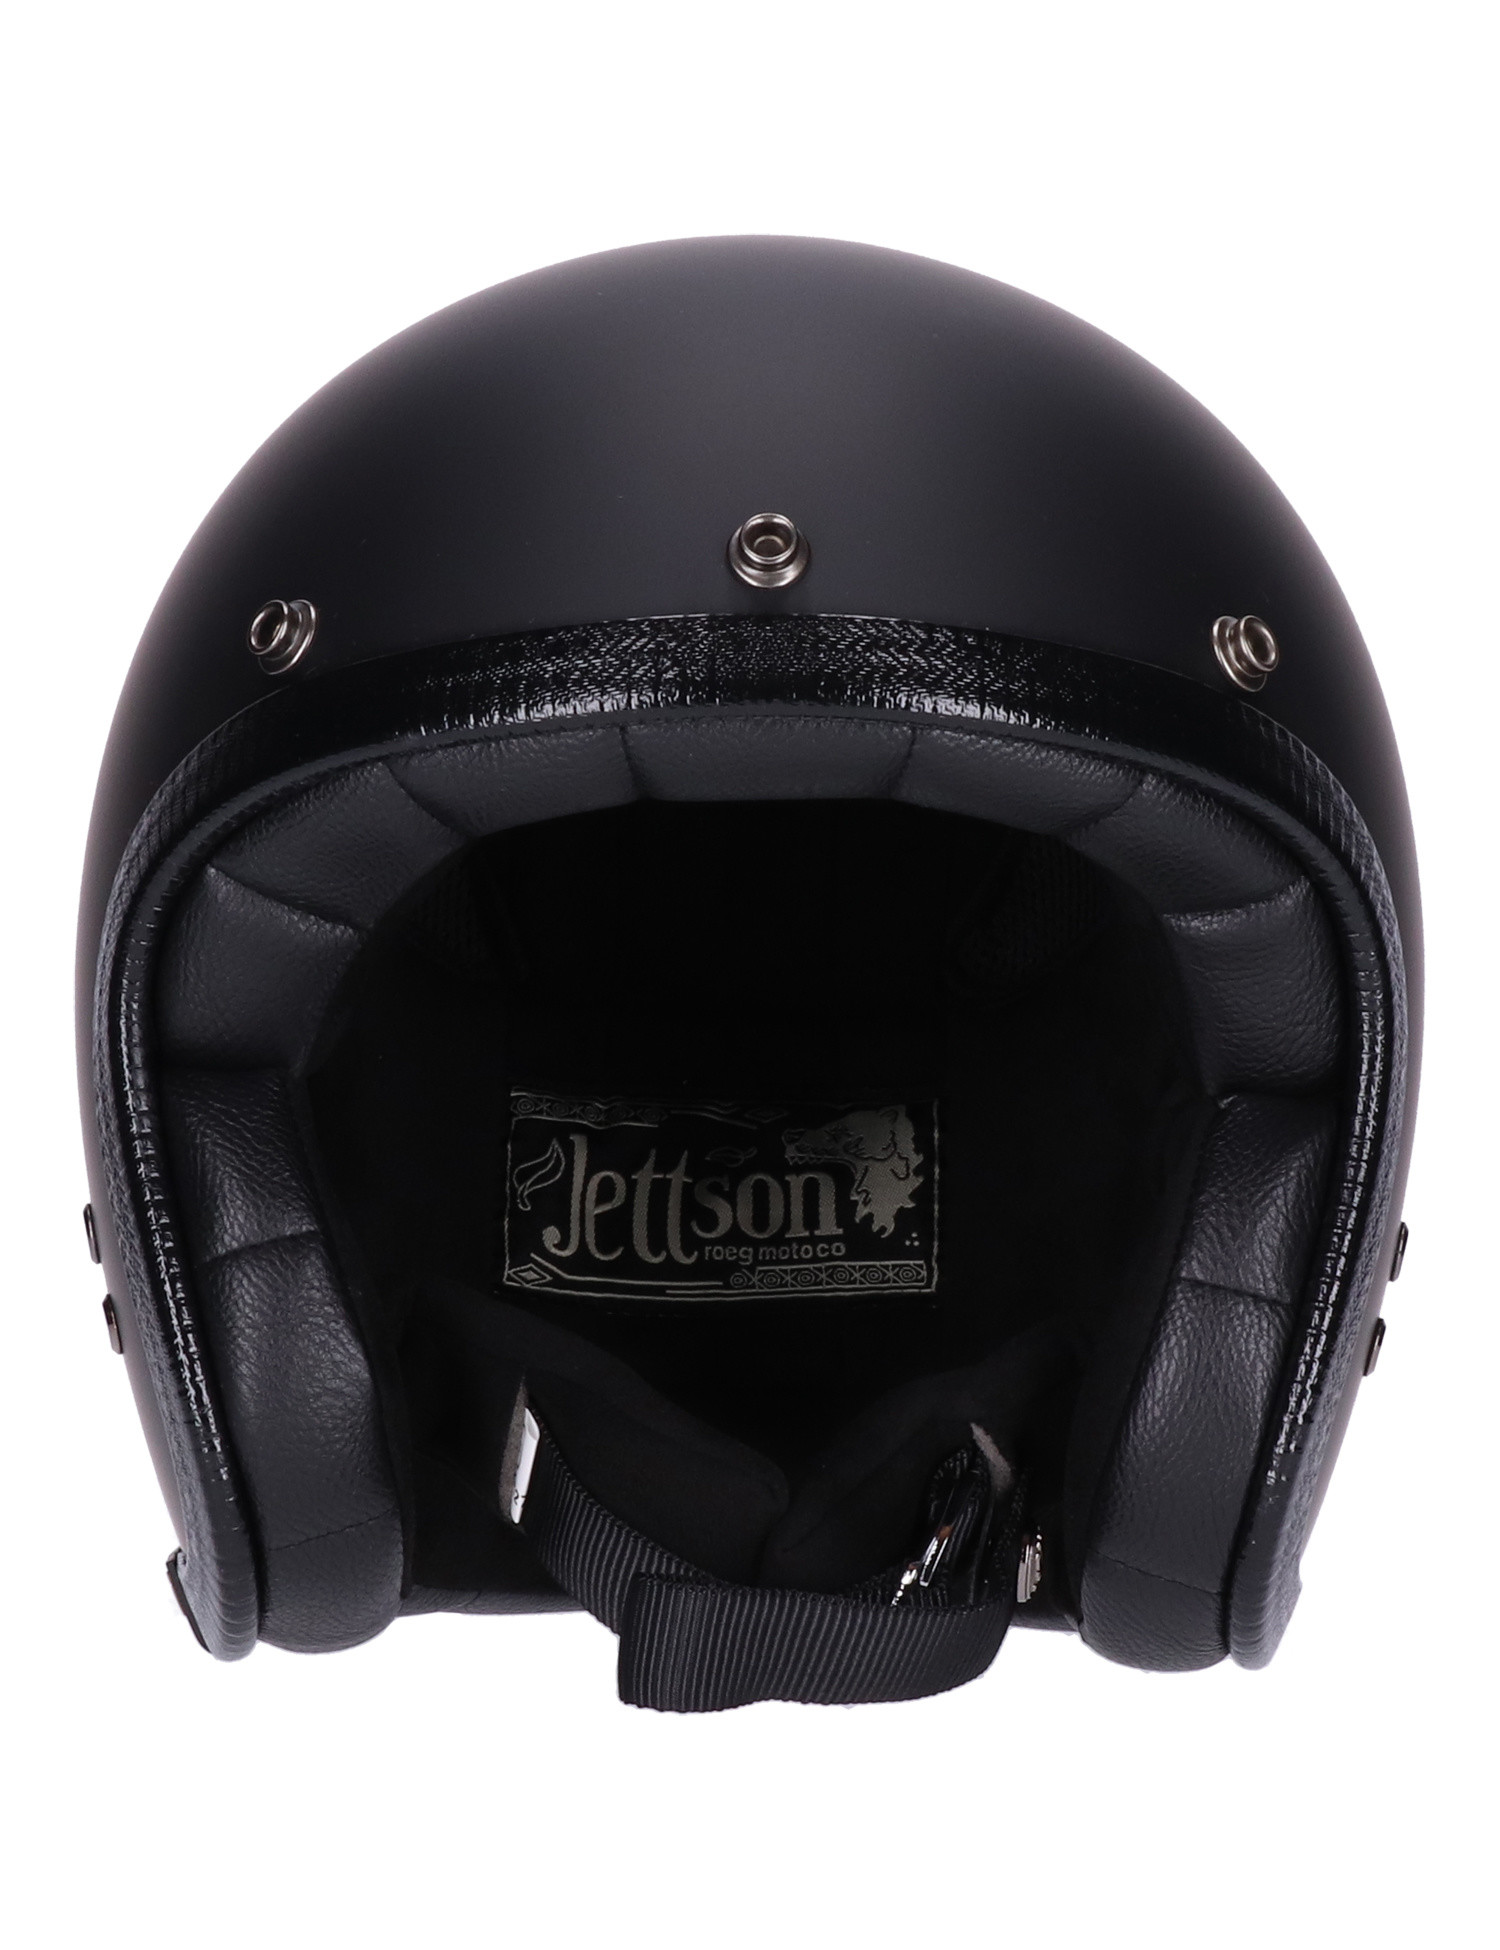 Roeg JETTson 2.0 Helmet matte black